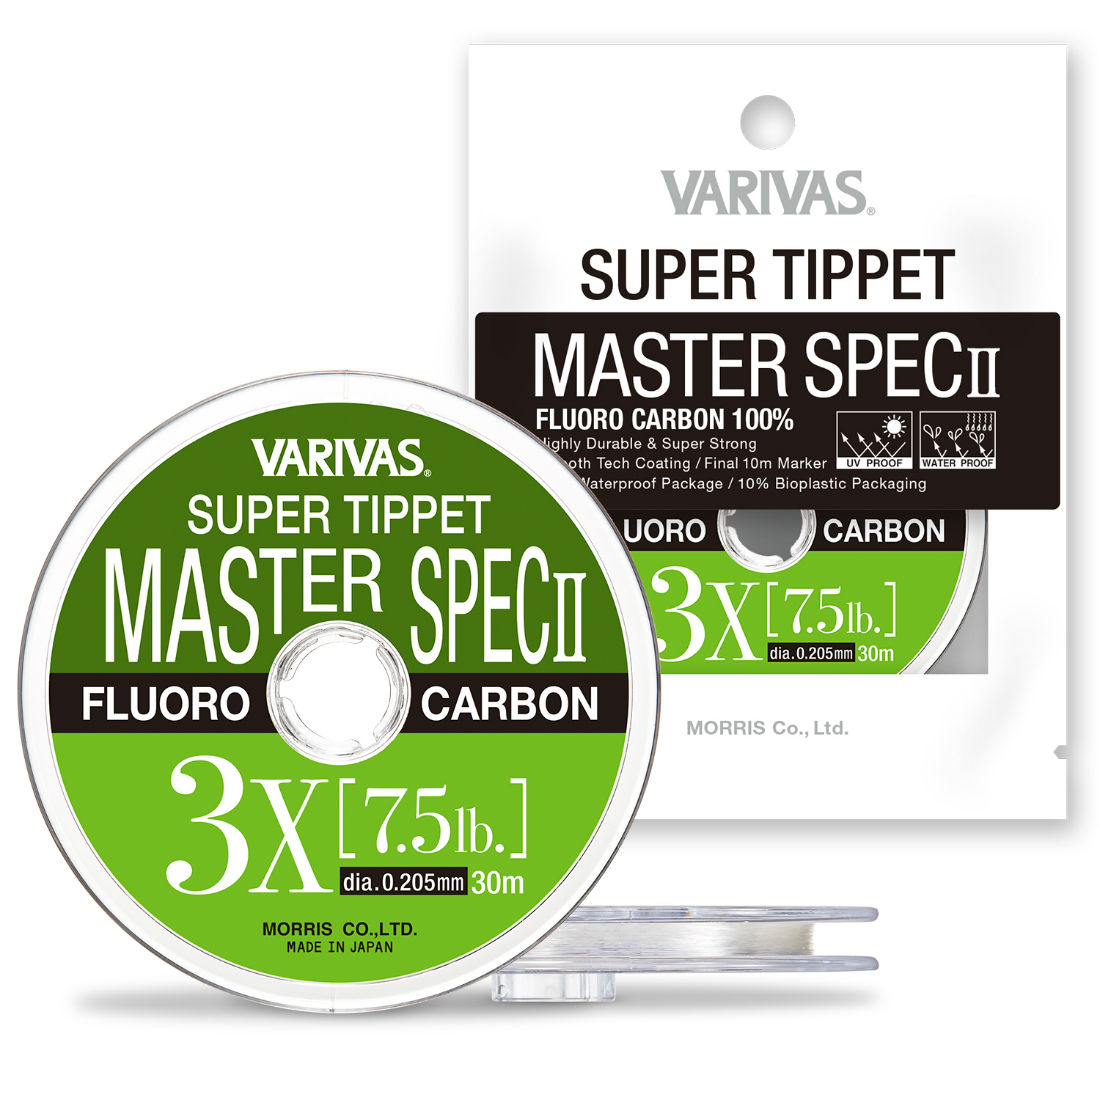 FIR SUPER TIPPET MASTER SPEC ll FLUORO 0X 25m 0.285mm 14.8lb